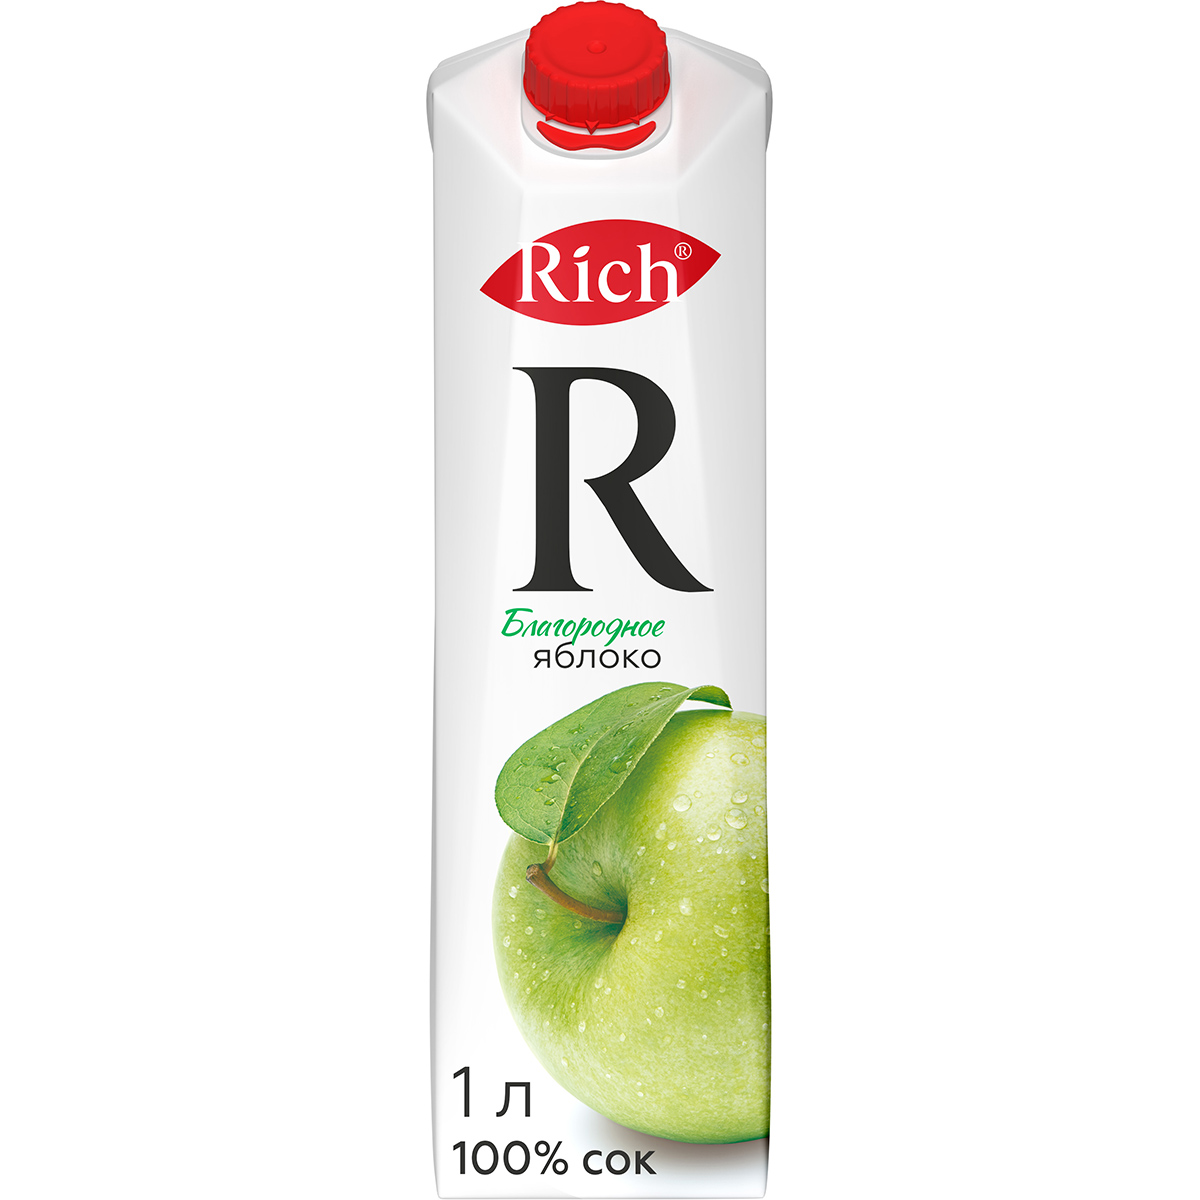 Сок Rich яблочный осветленный 100% 1 л сок j7 яблоко осветленный 200 мл